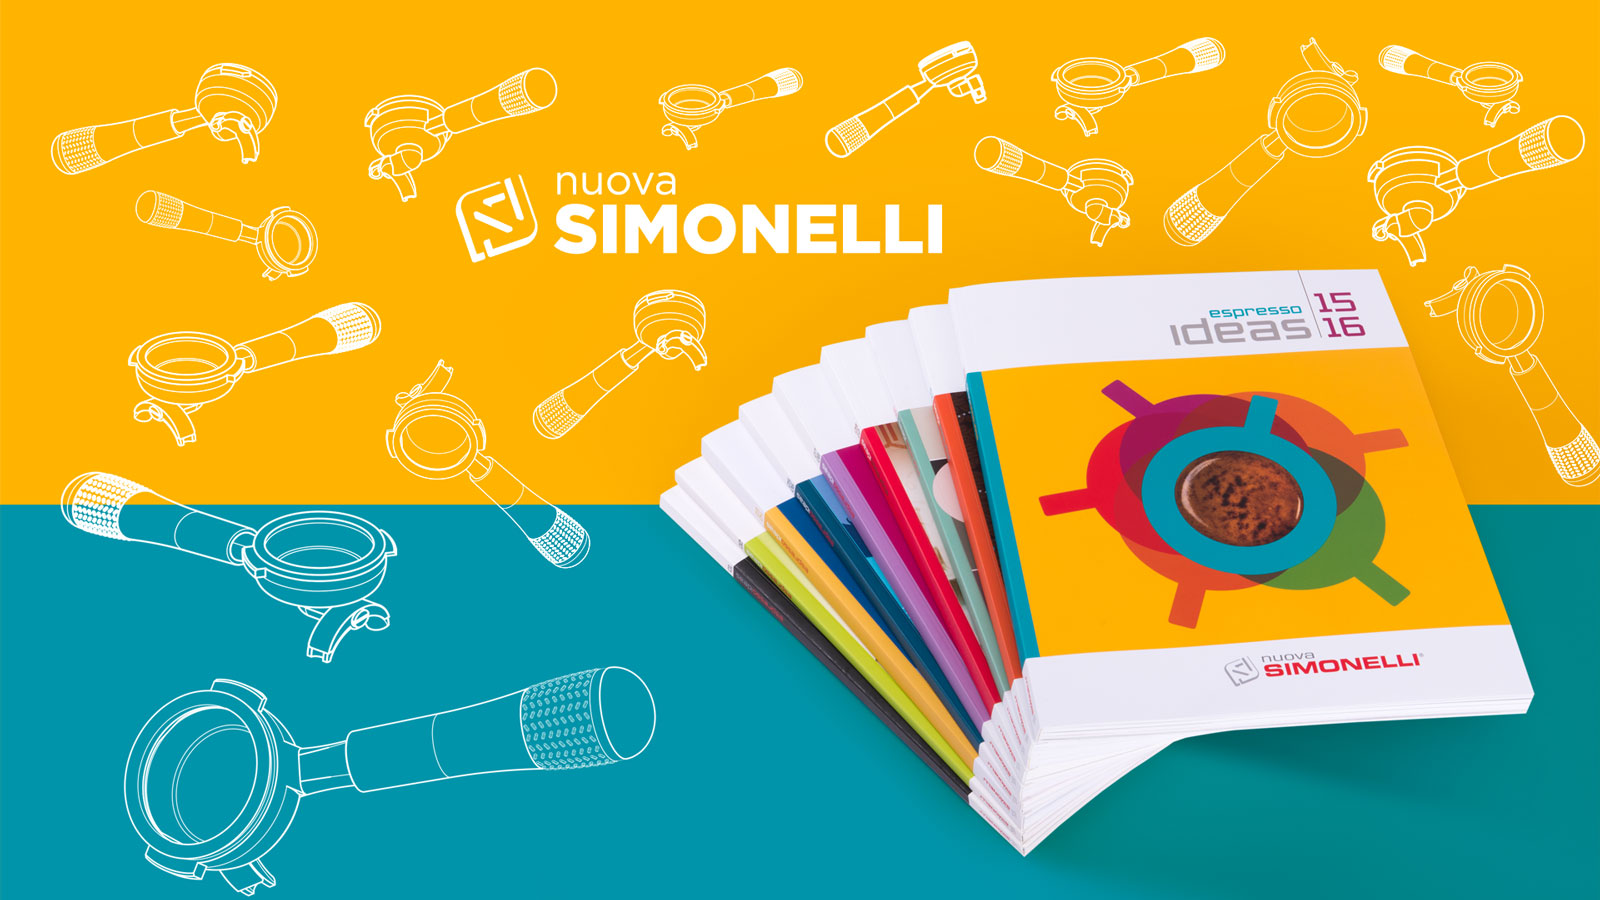 Corporate Identity e Brand Design per Nuova Simonelli - Memphiscom, Tolentino